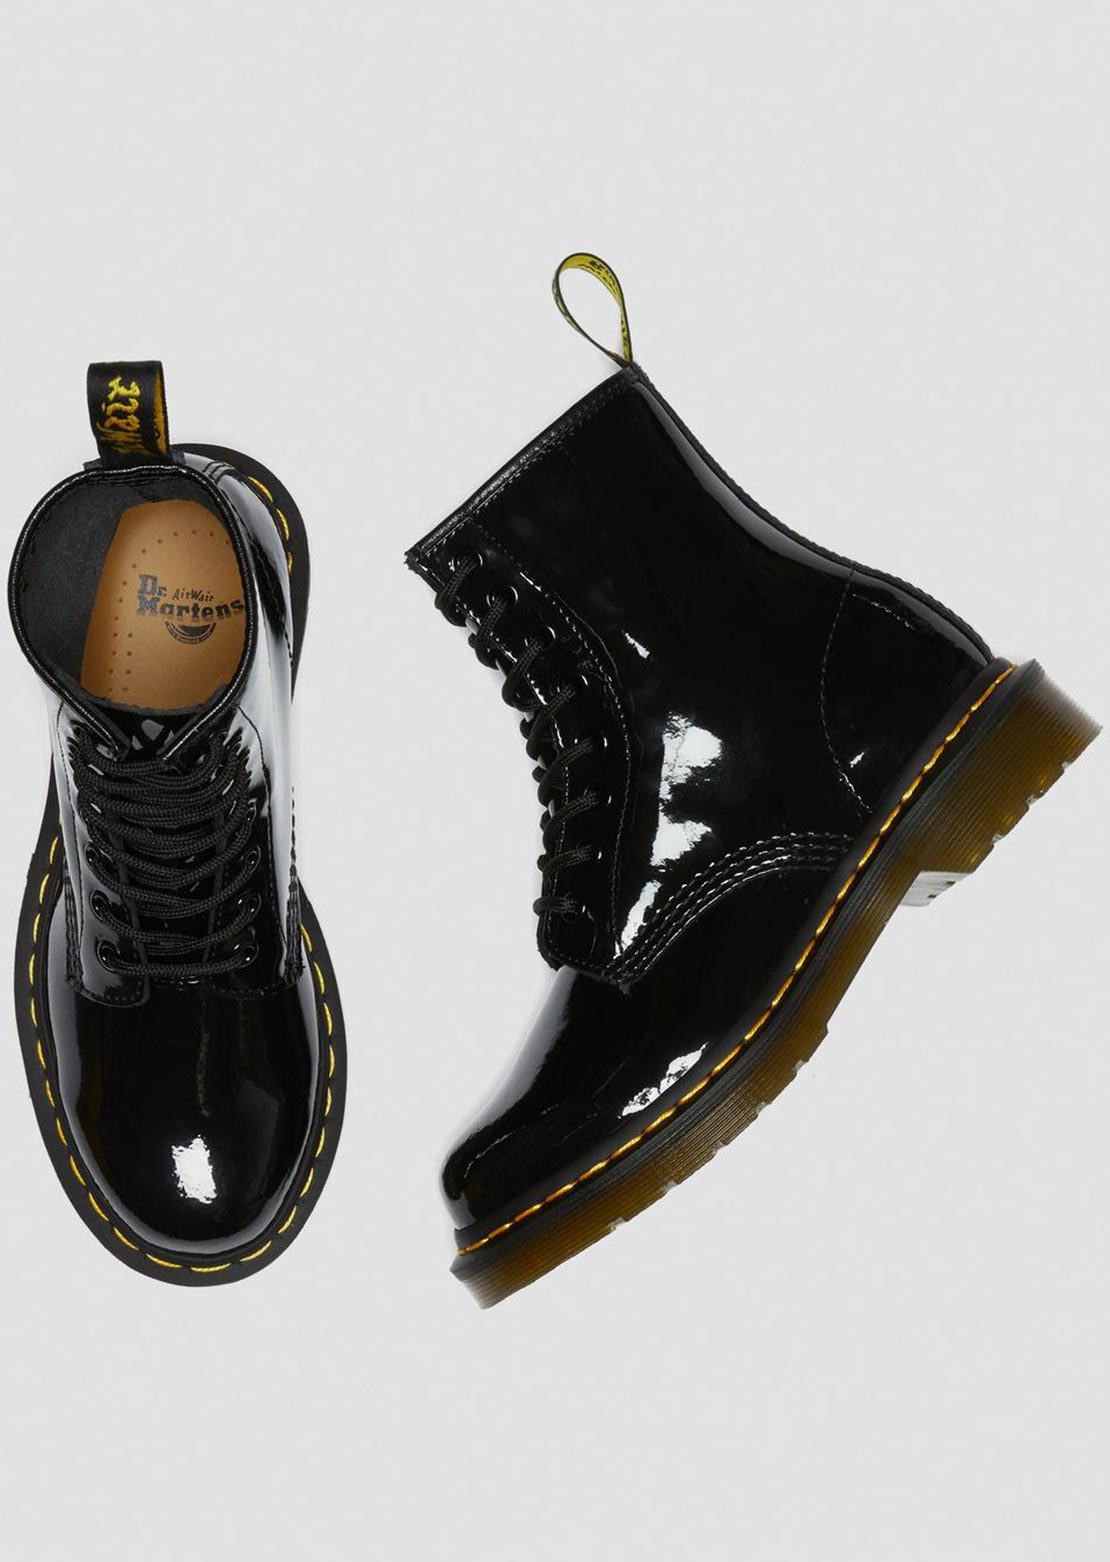 Dr.Martens Women’s 1460 Boots Patent Lamper Black